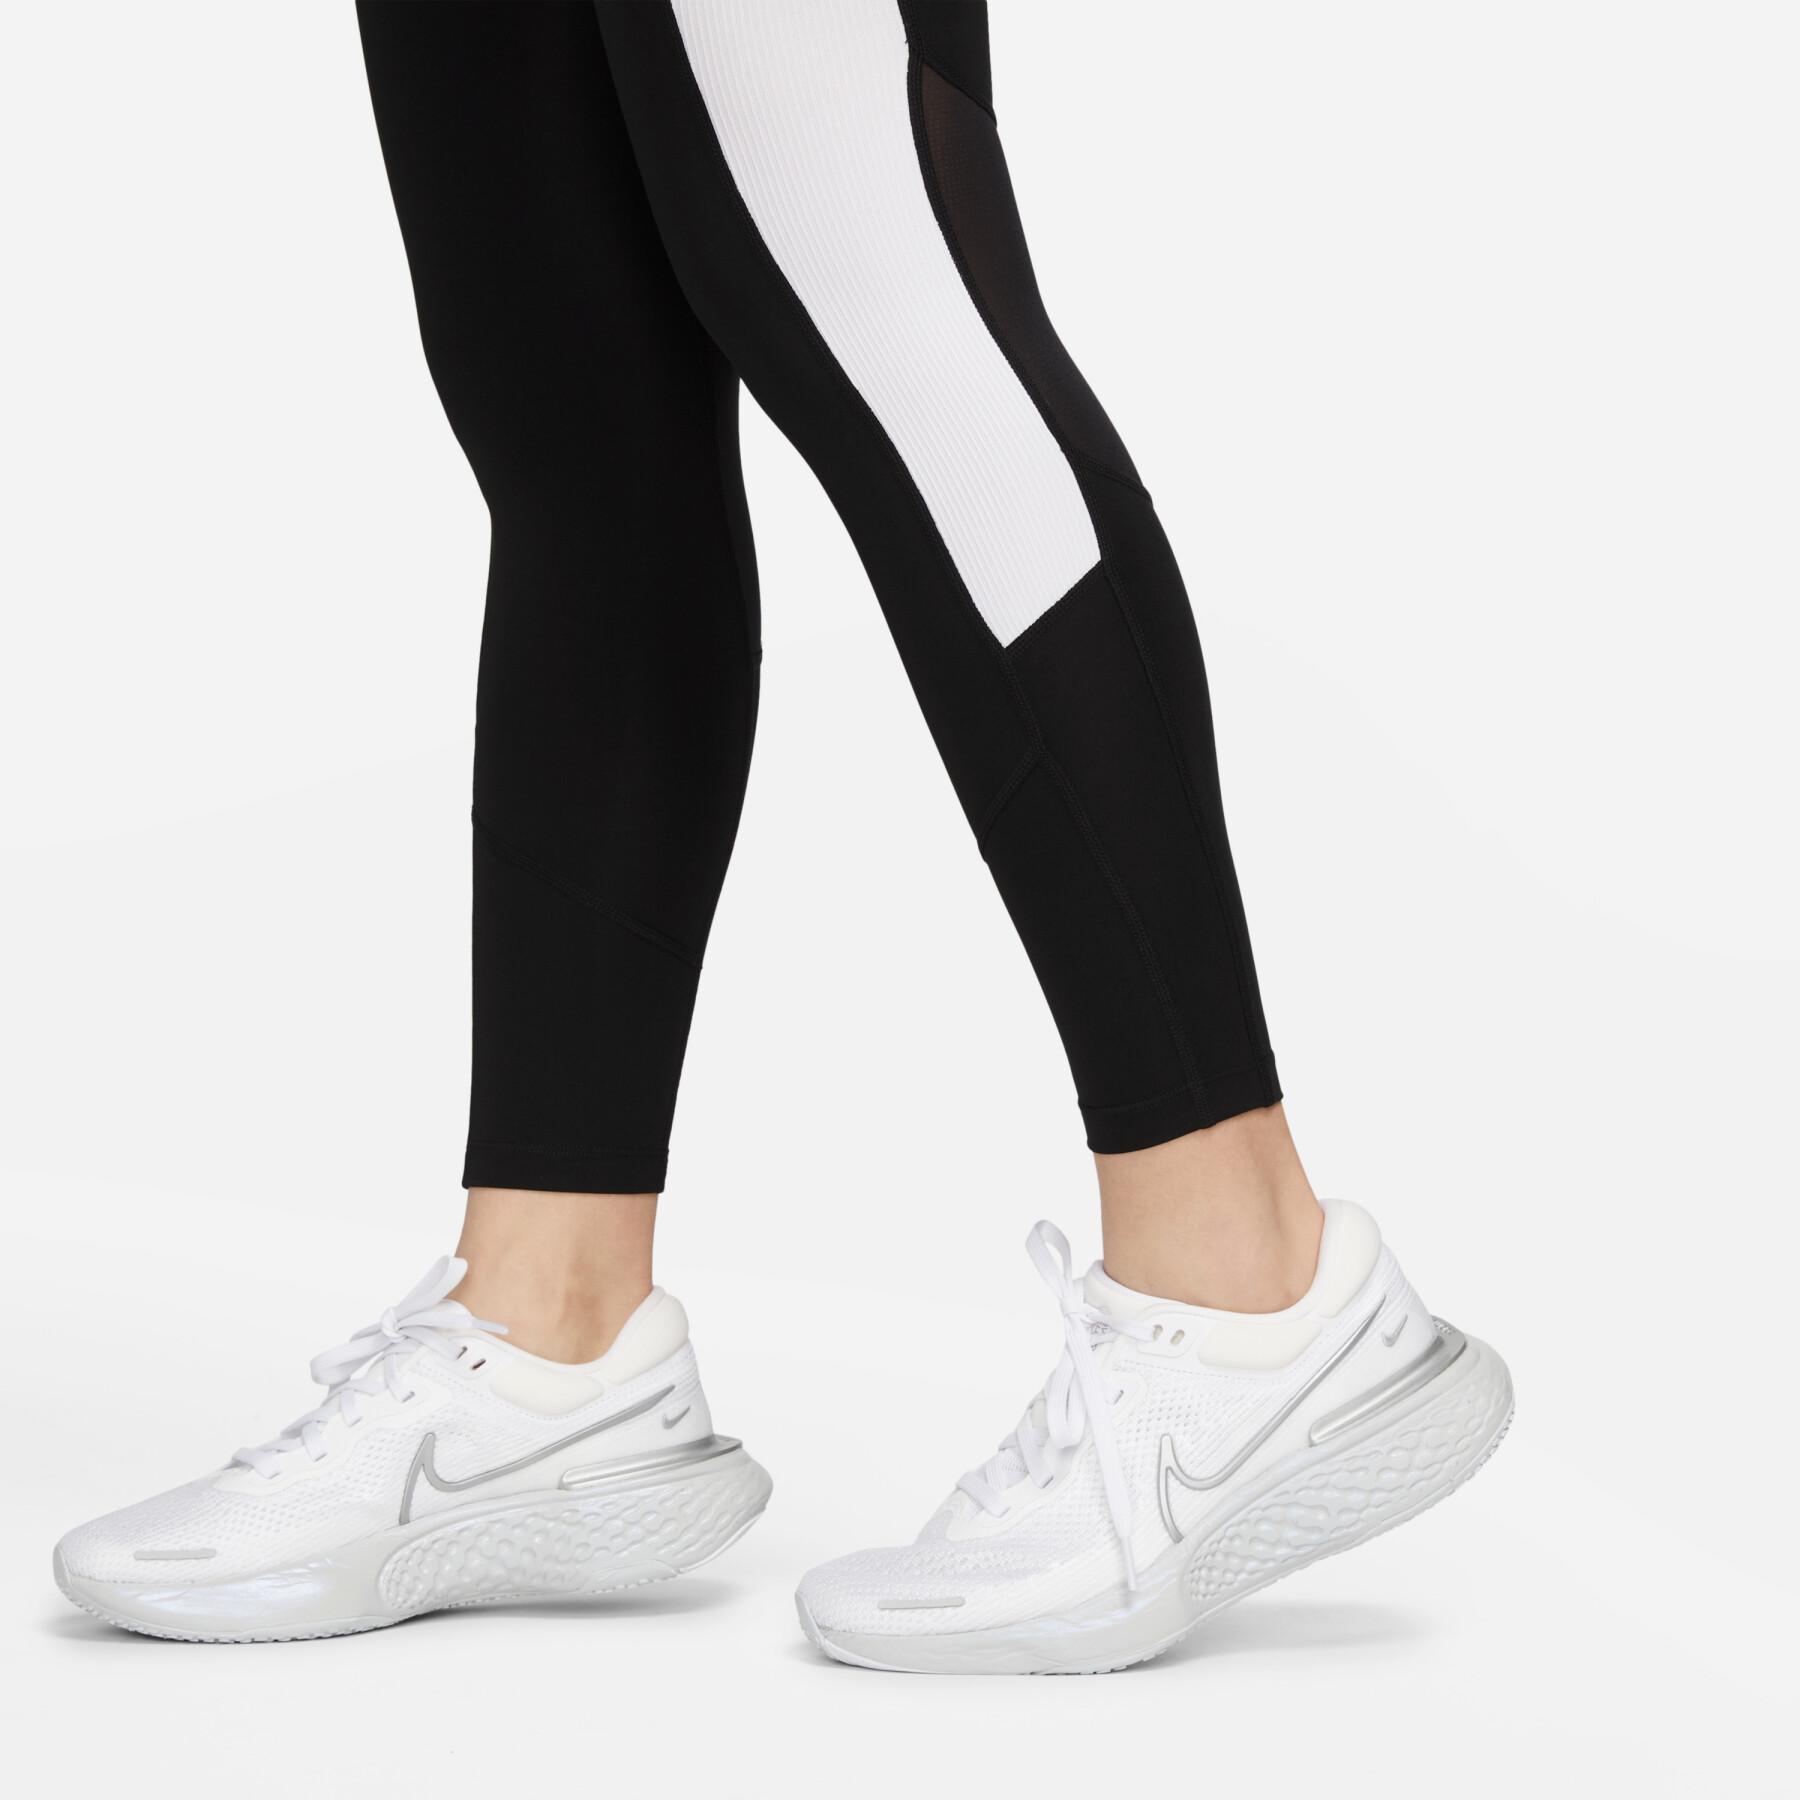 Leggings für Frauen Nike Air Dri-FIT